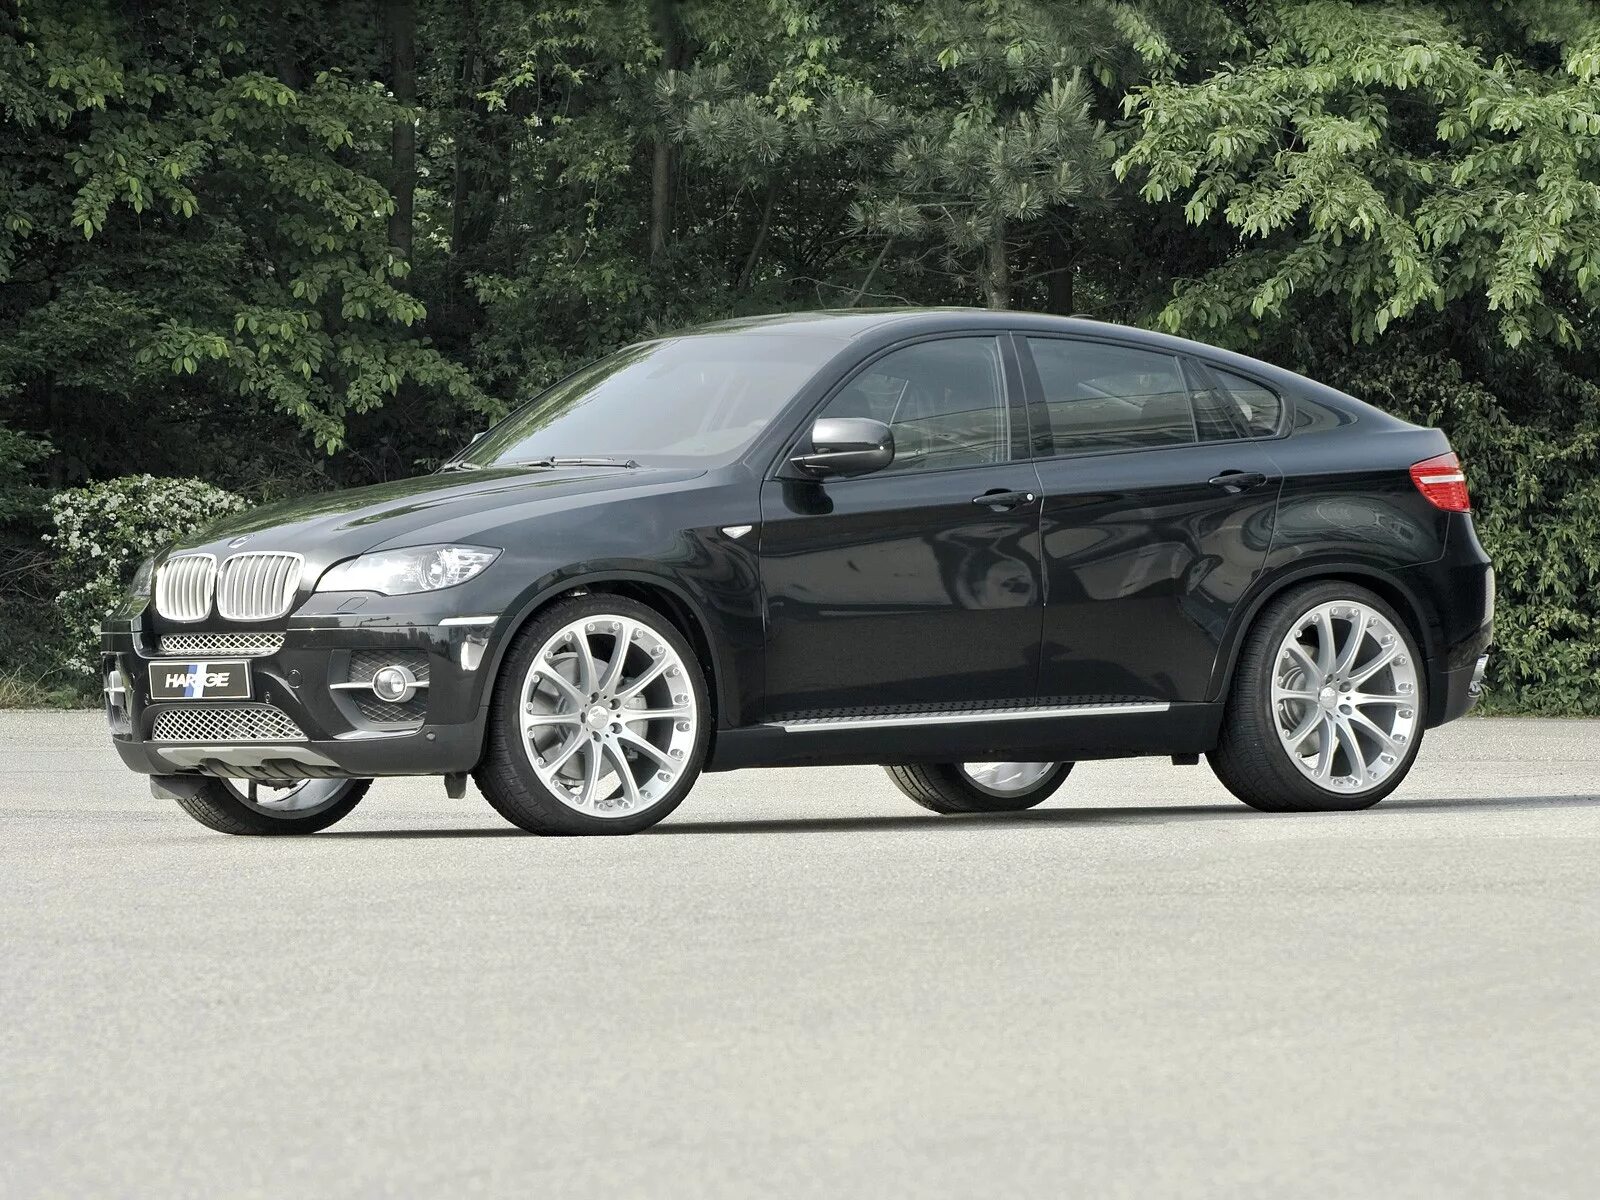 BMW x6 2008. BMW x6 e71 2008. BMW x6 Hartge. BMW x6 Black 2008.